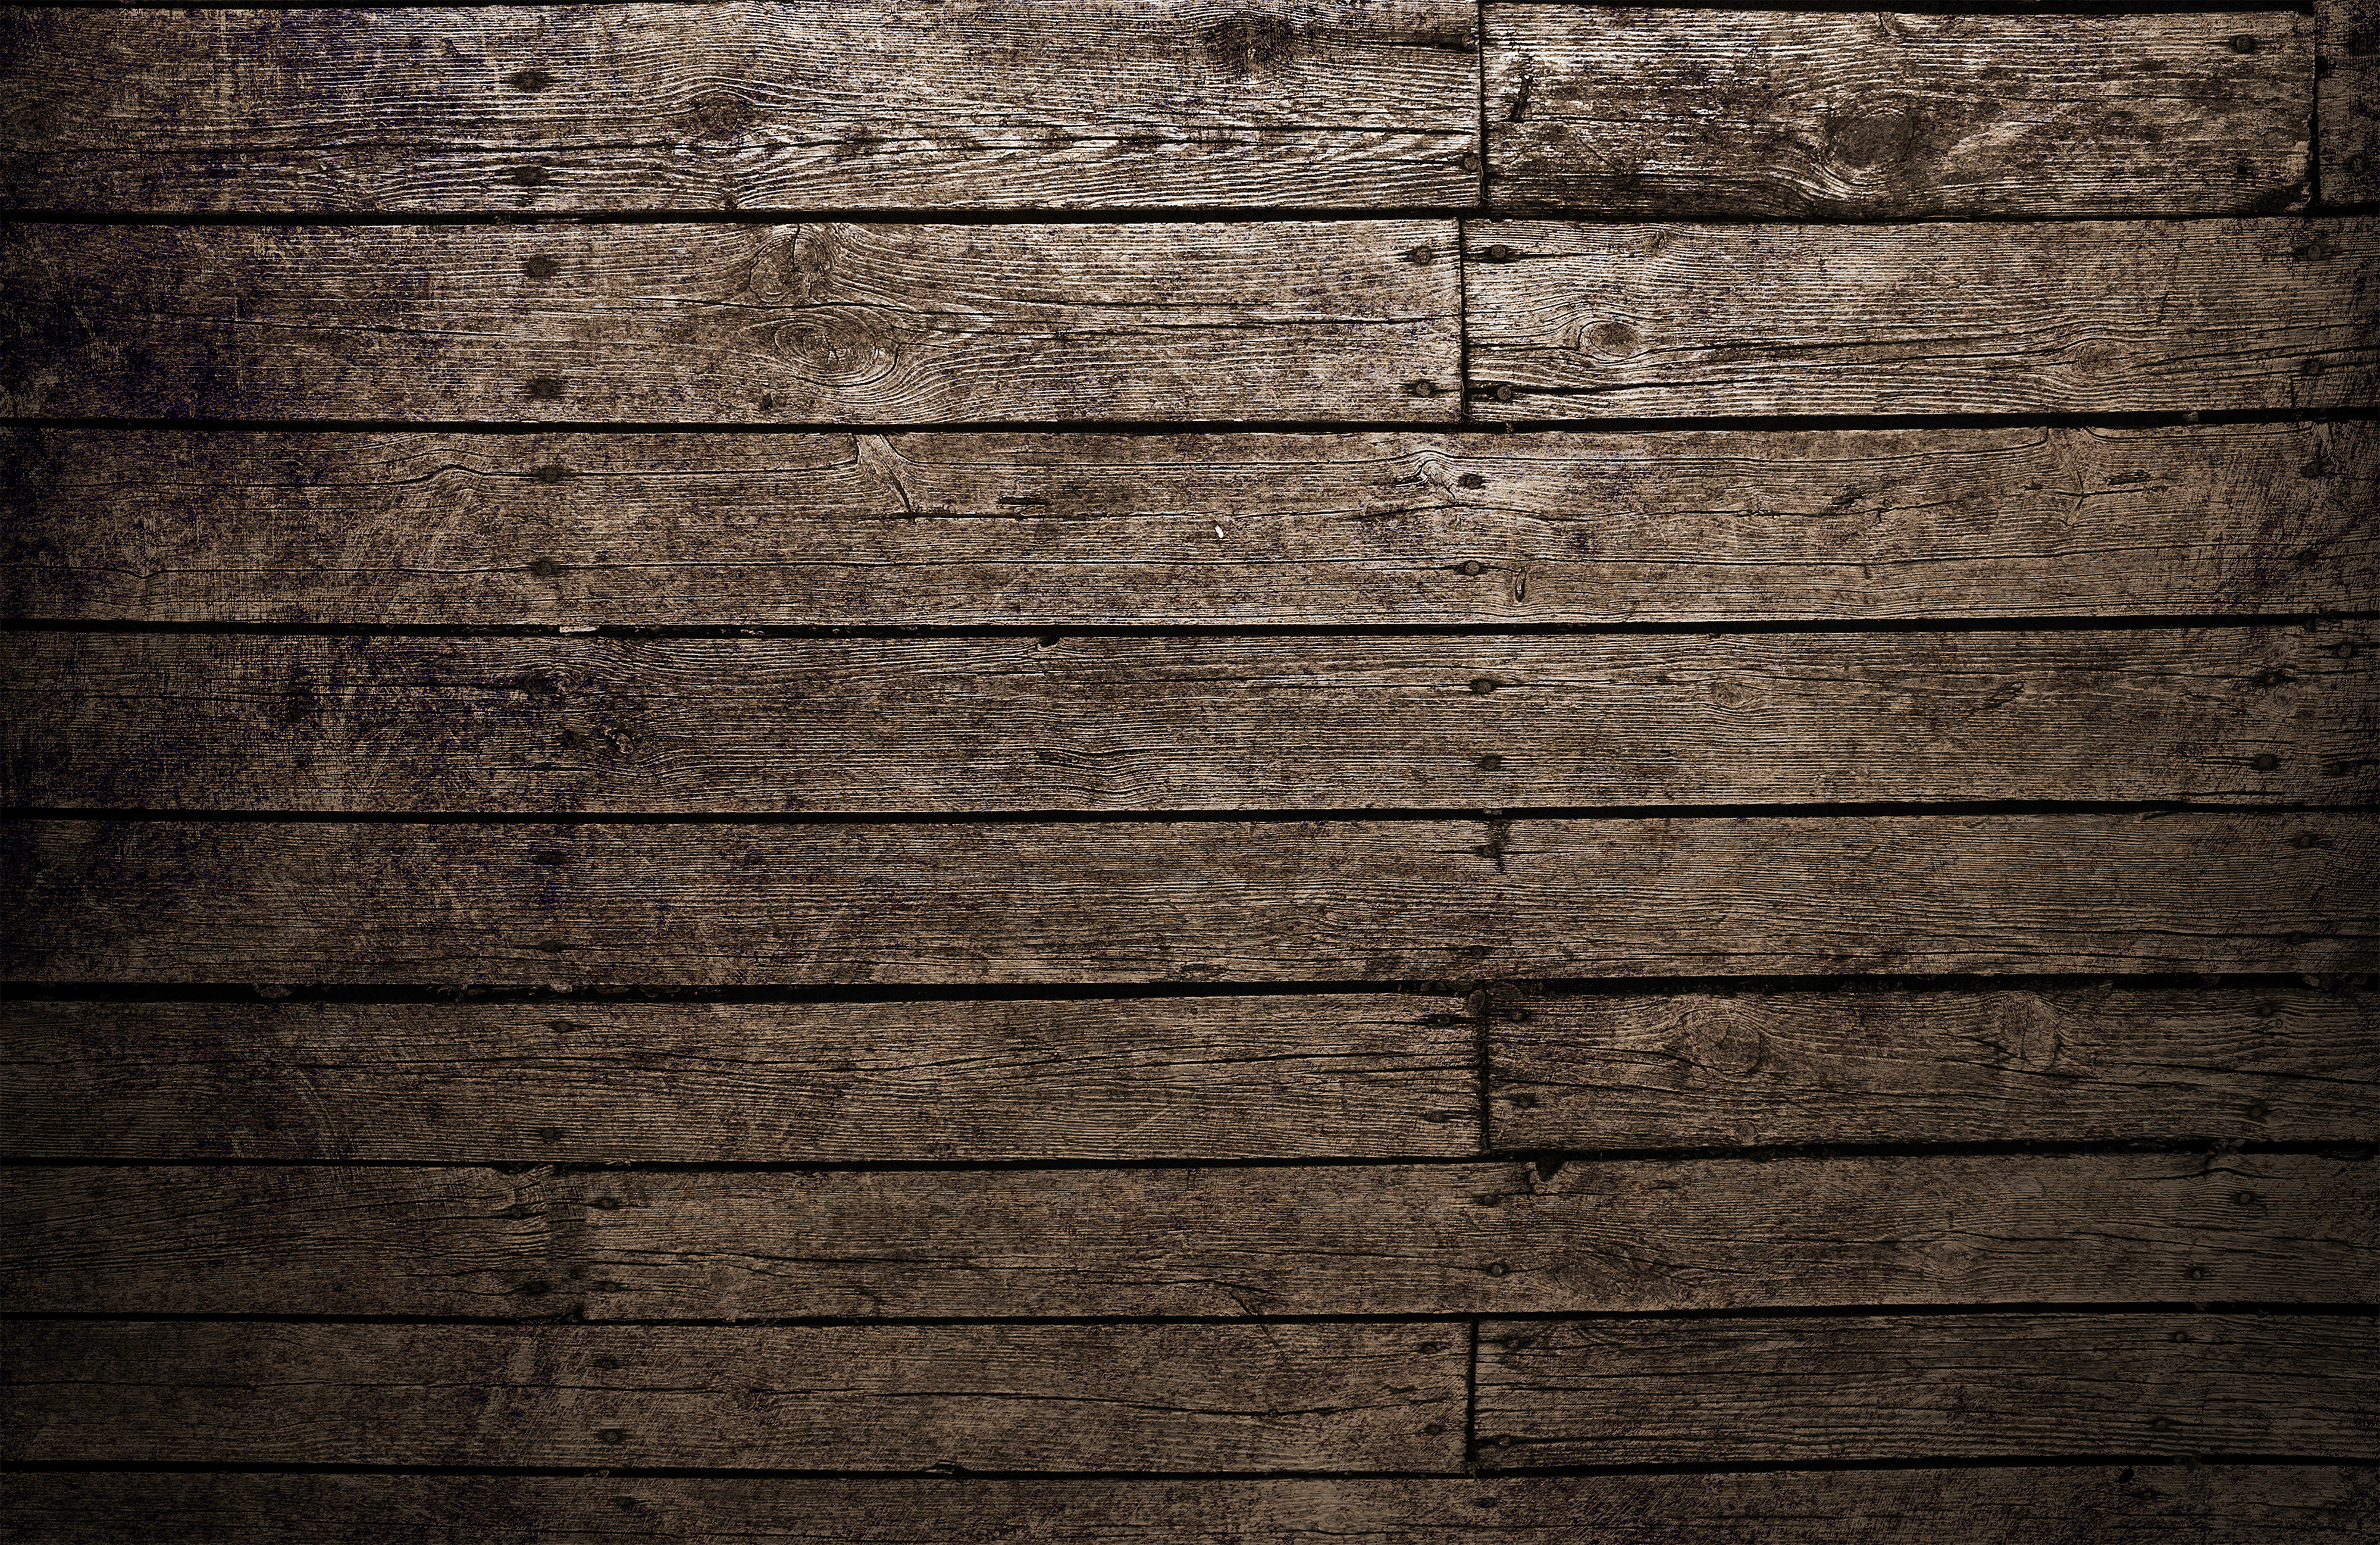 Nền gỗ nâu là lựa chọn phổ biến cho những người yêu thích màu gỗ ấm áp và sang trọng. Hình ảnh liên quan sẽ cho bạn chiêm ngưỡng những nền gỗ nâu đẹp mắt, tạo nên vẻ đẹp tự nhiên và ấm cúng cho căn phòng của bạn.